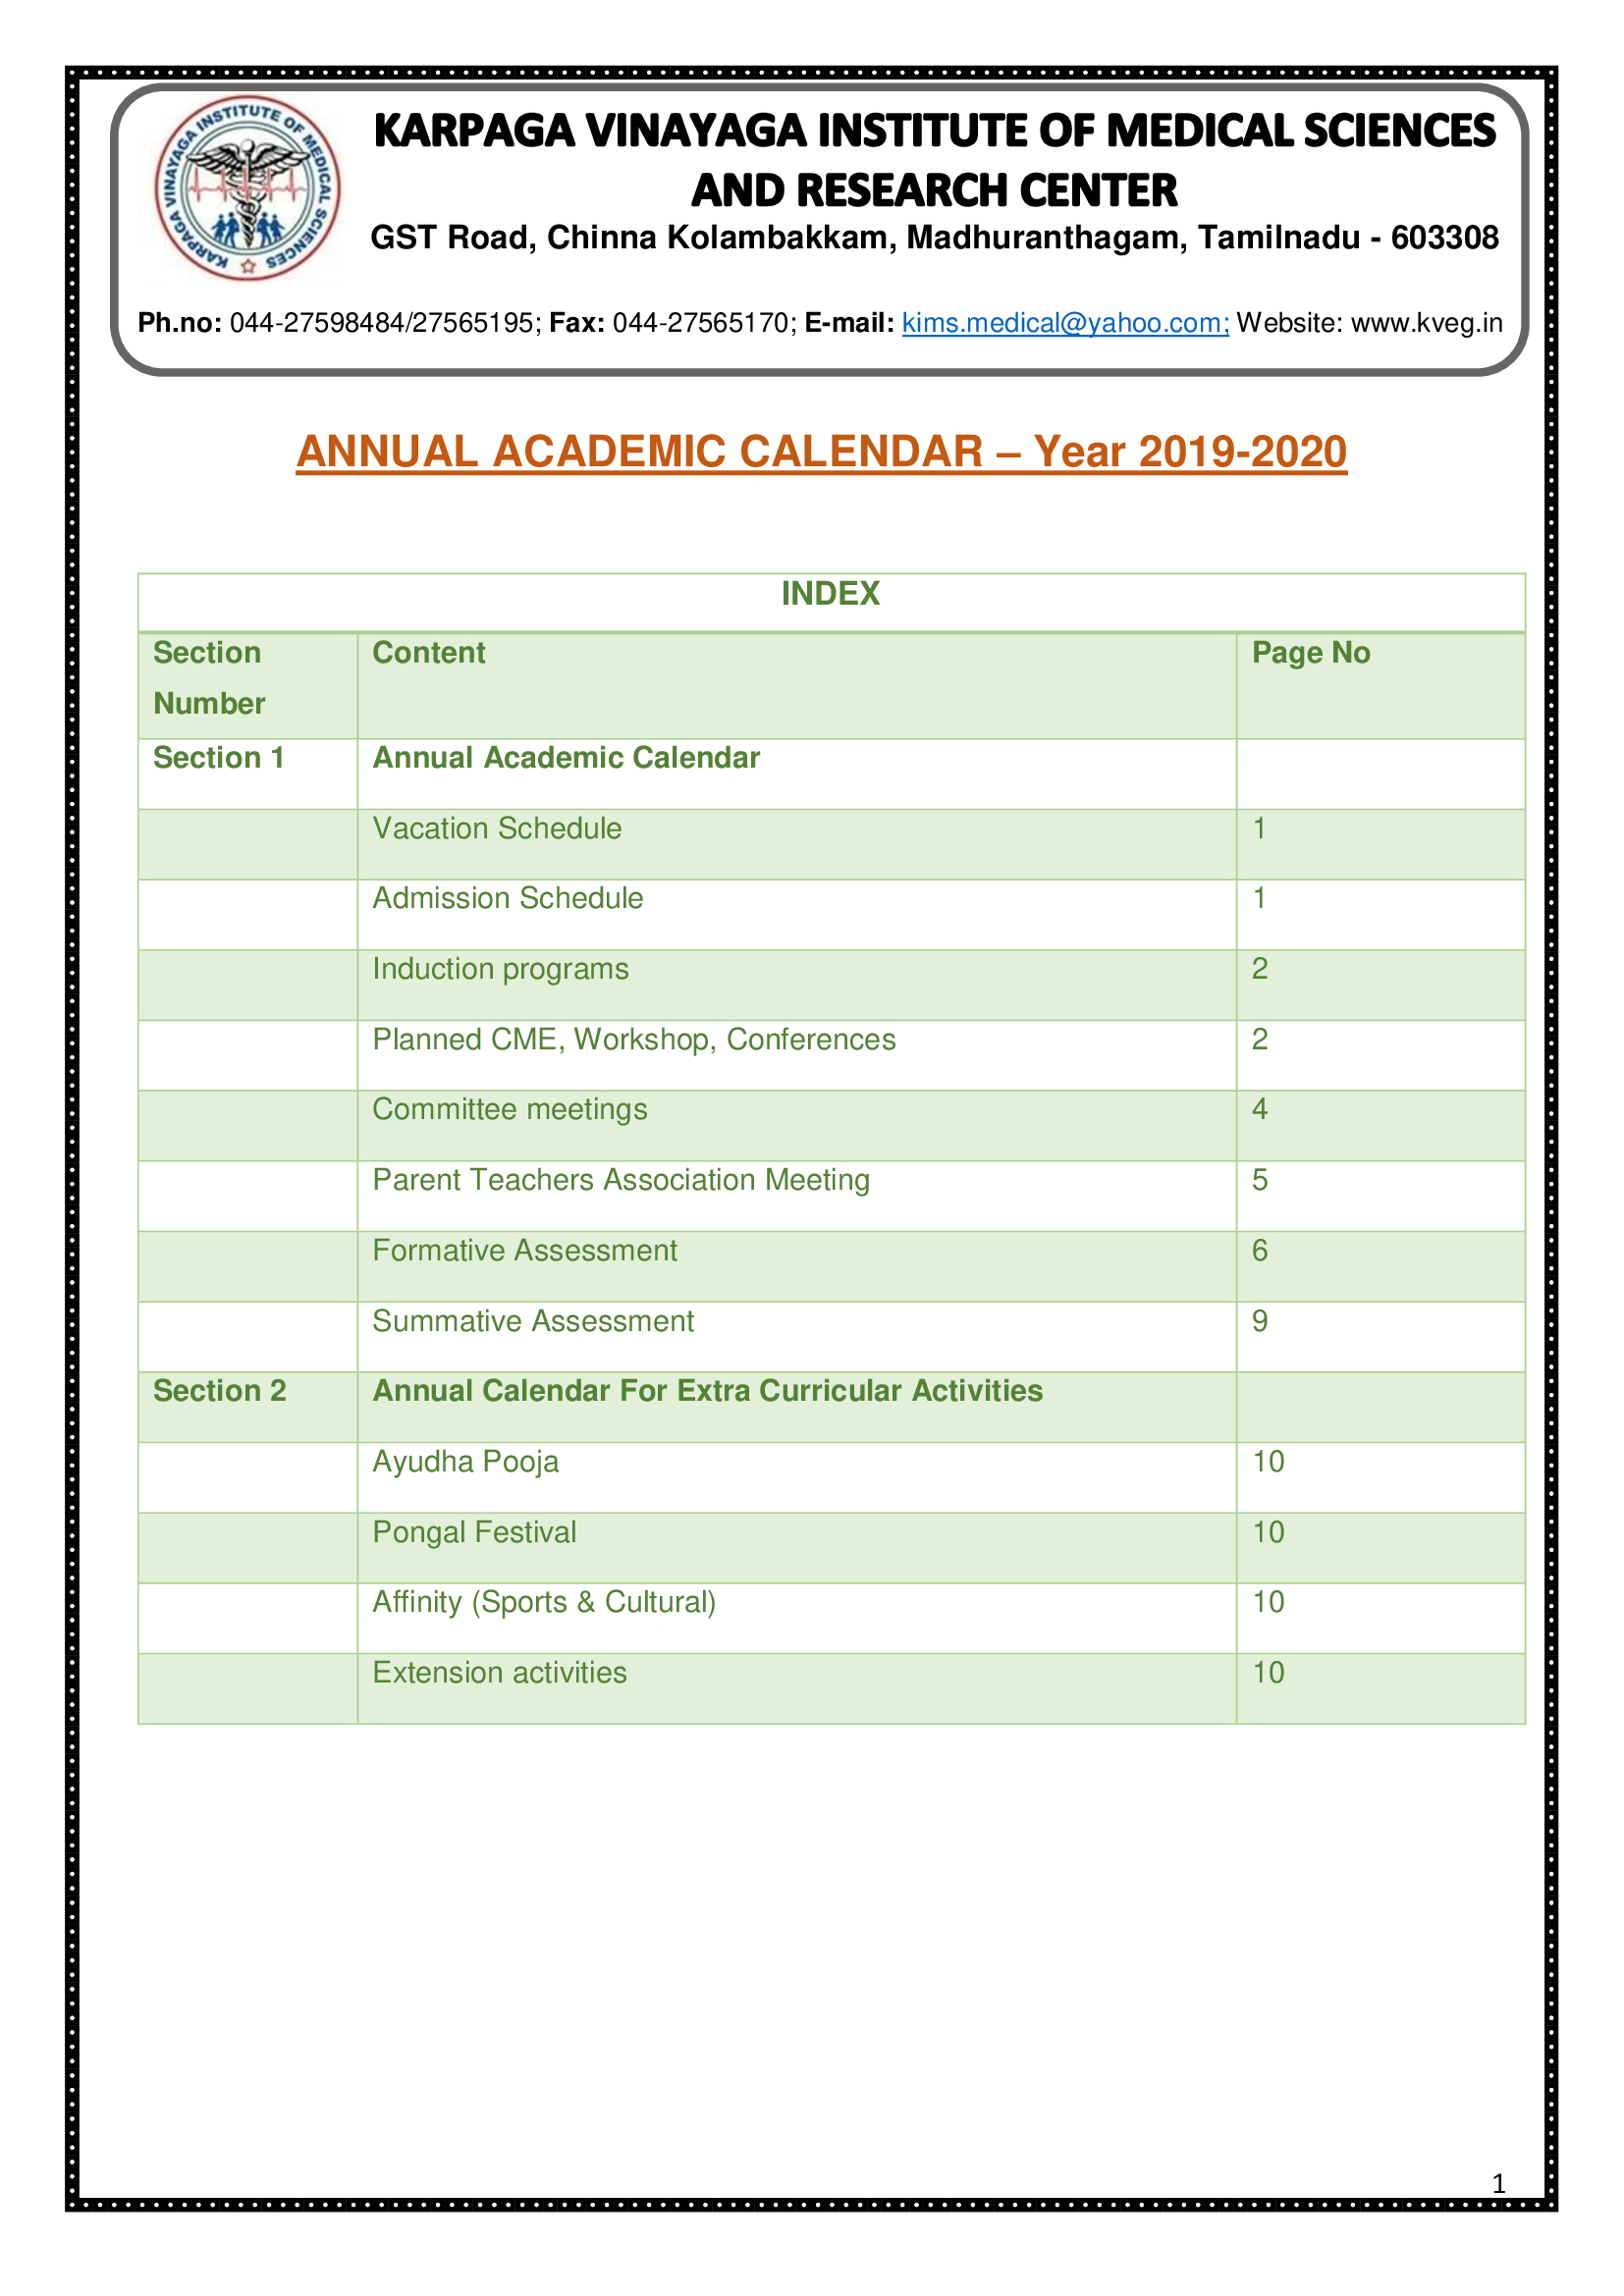 Academic Calendar Karpaga Vinayaga Institute of Medical Sciences and